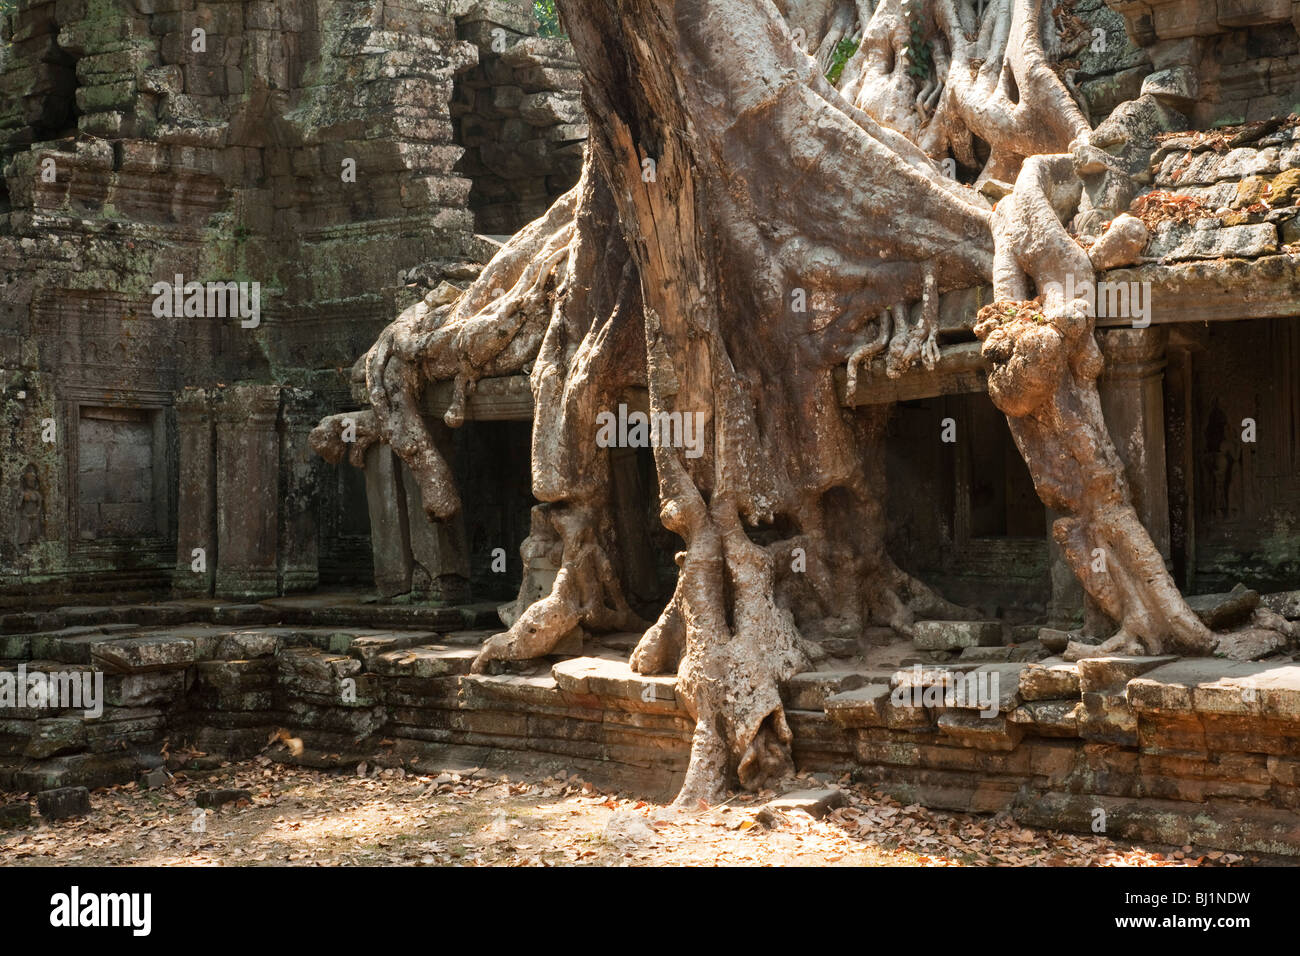 Ficus Strangulosa albero che cresce su una porta nelle antiche rovine di Angkor Wat sito in Cambogia Foto Stock